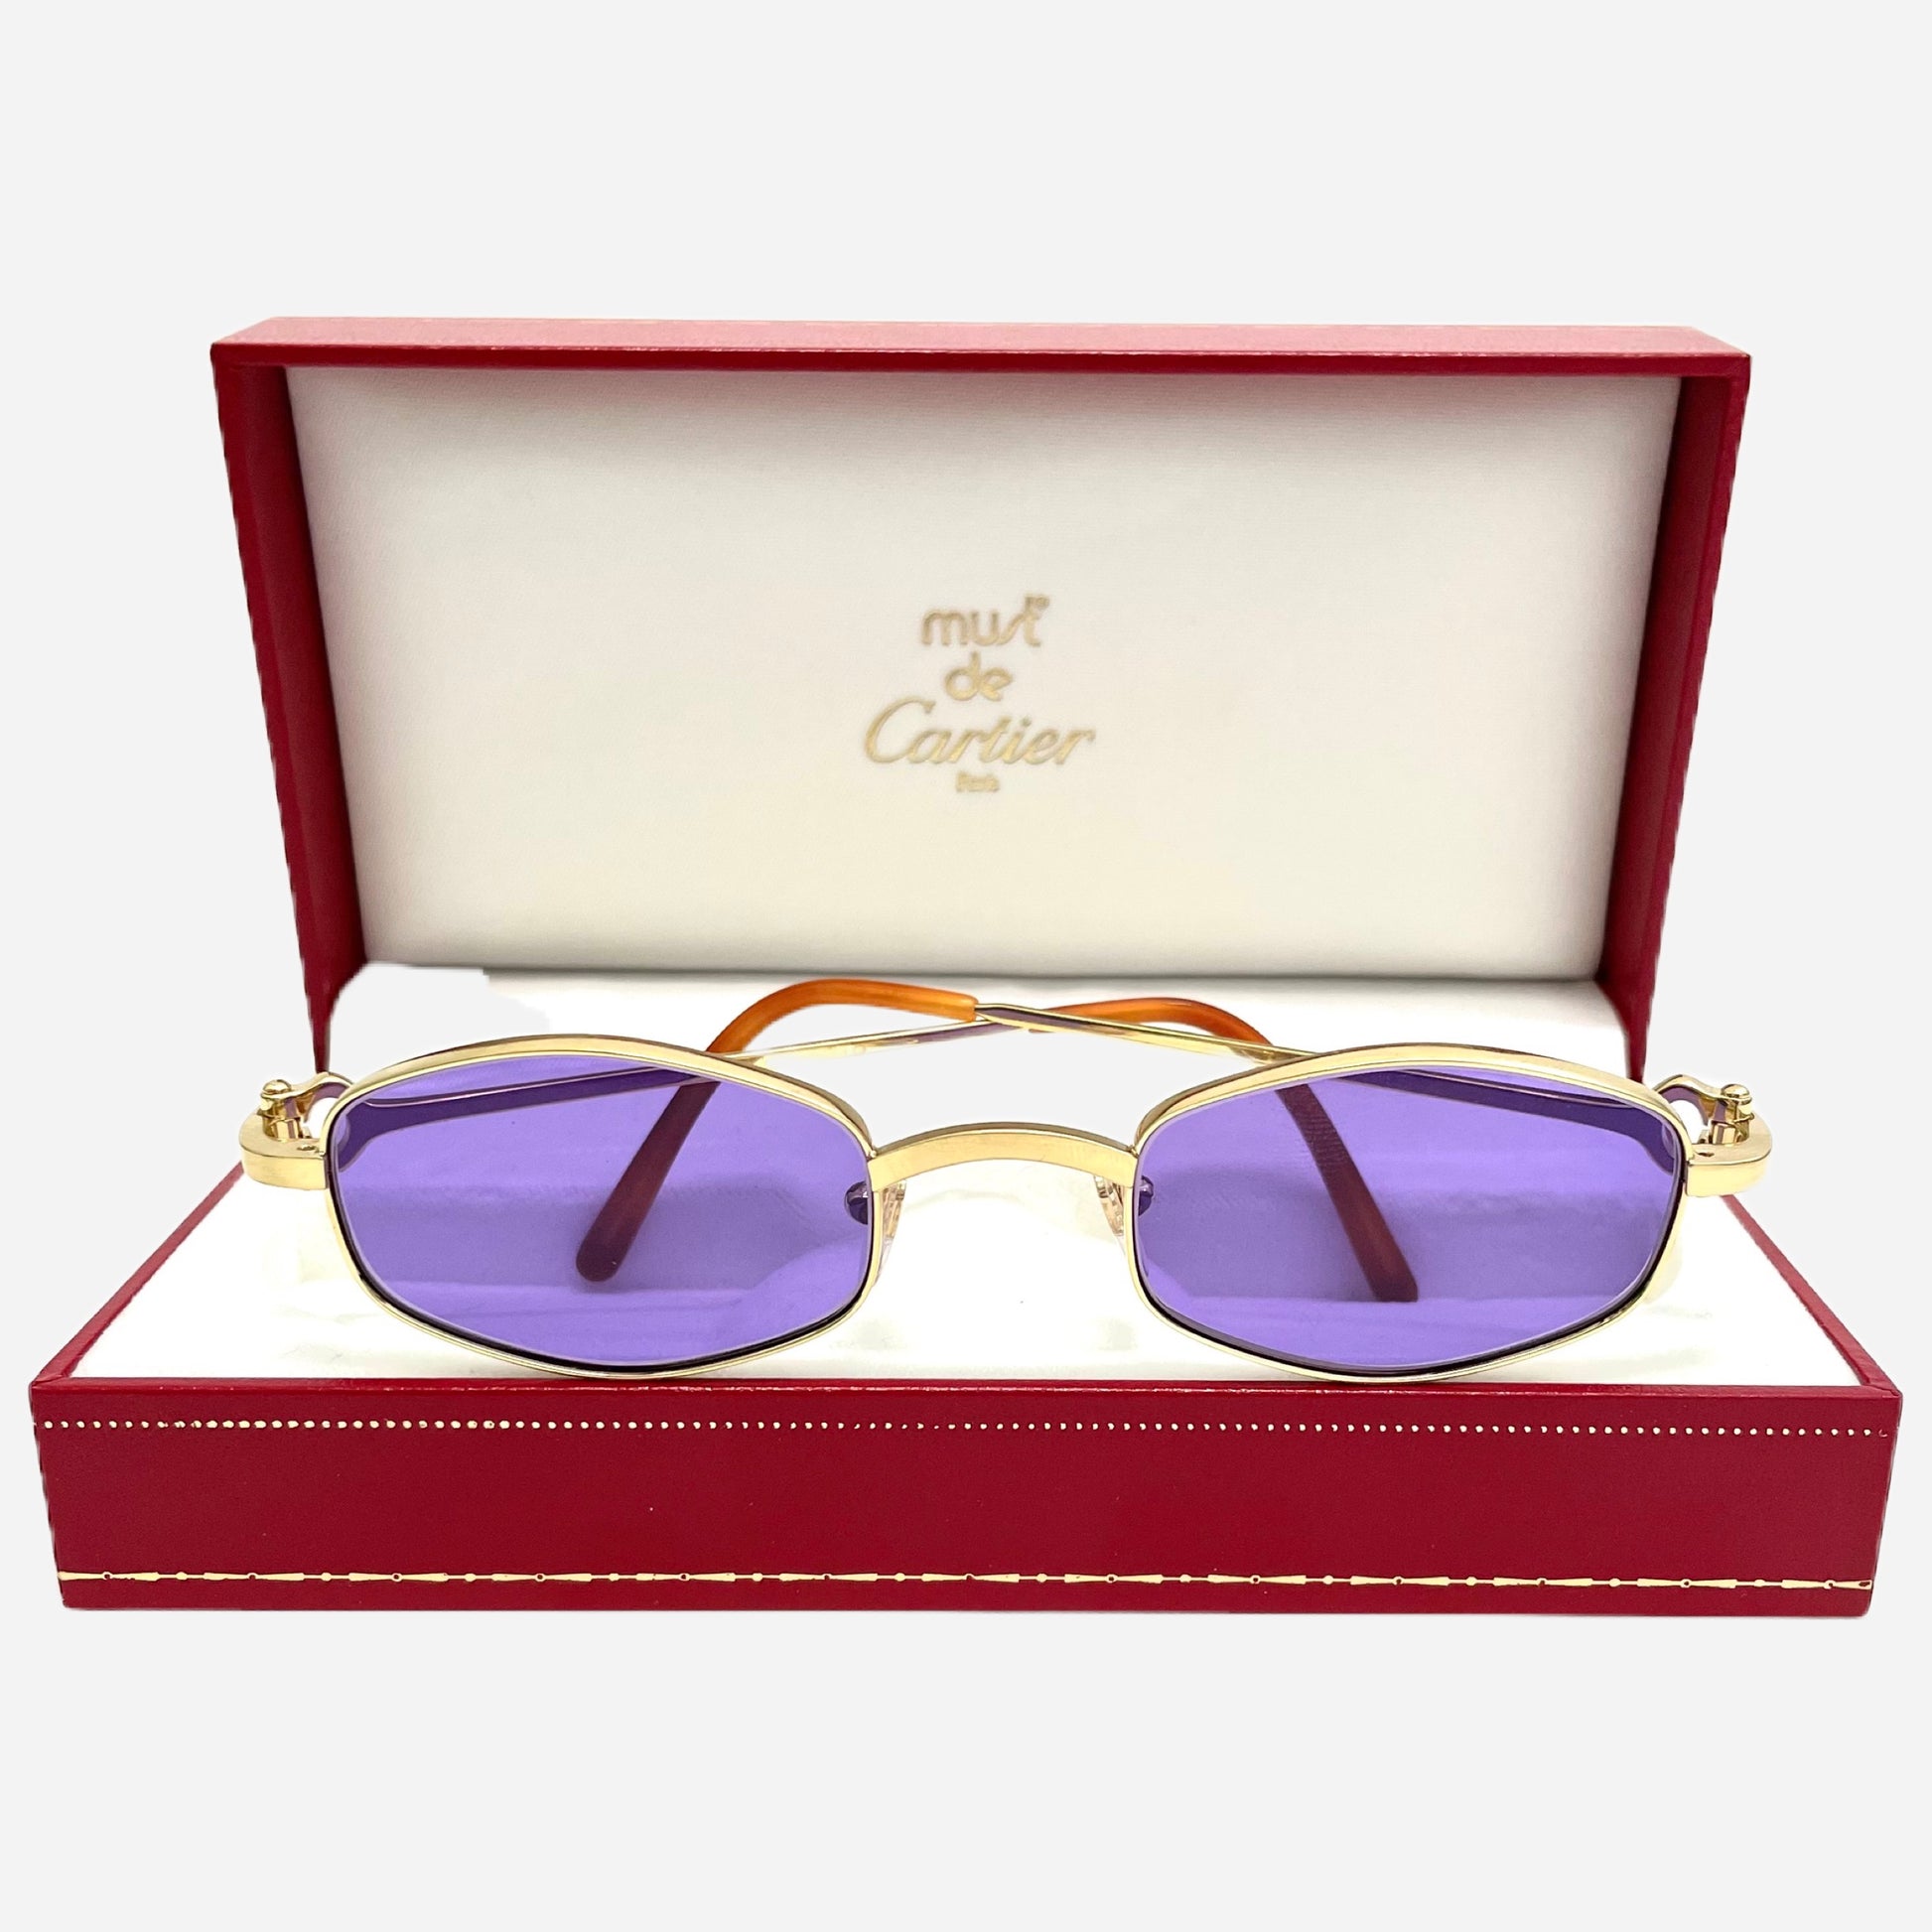 Vintage-Cartier-Octagon-24-Carats-Sonnenbrille-Sunglasses-the-seekers-vintage-designer-sunglasses-case-cartier-box